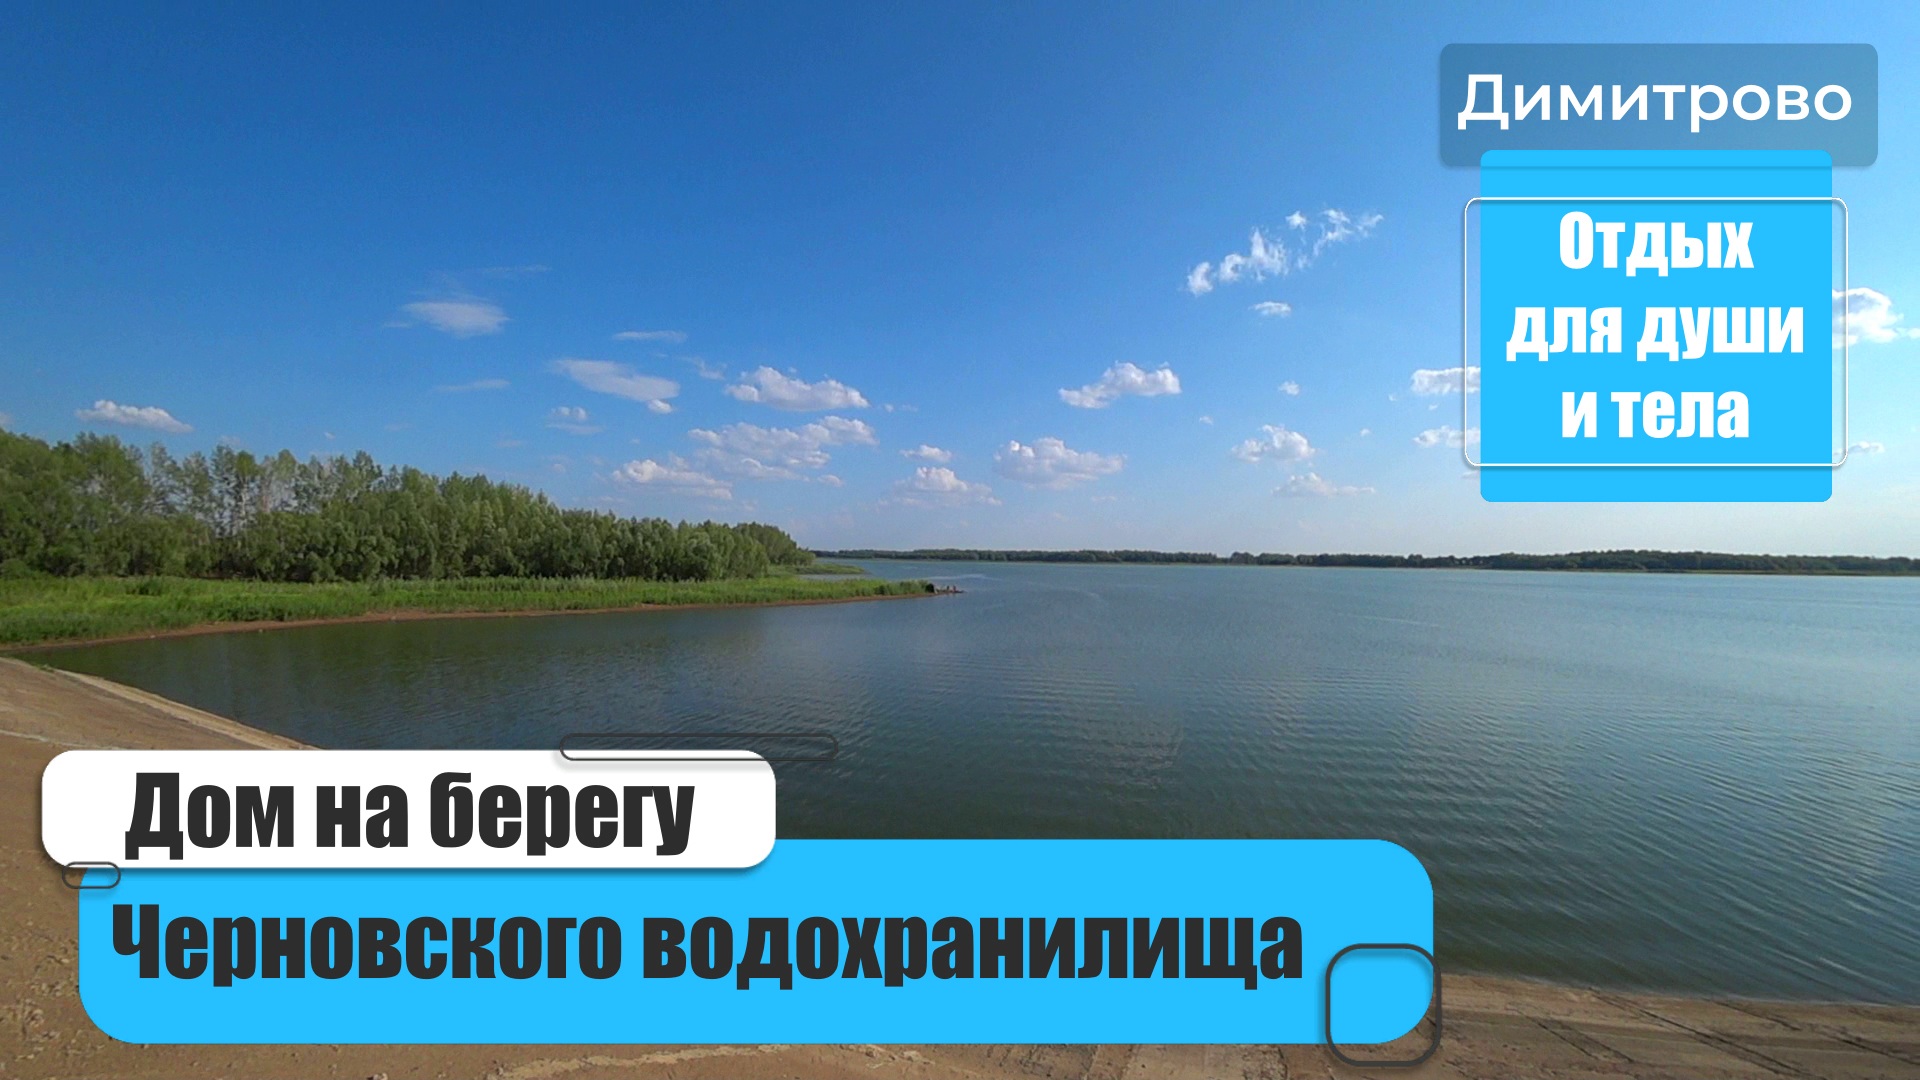 Дом на берегу Черновского - Димитровского водохранилища